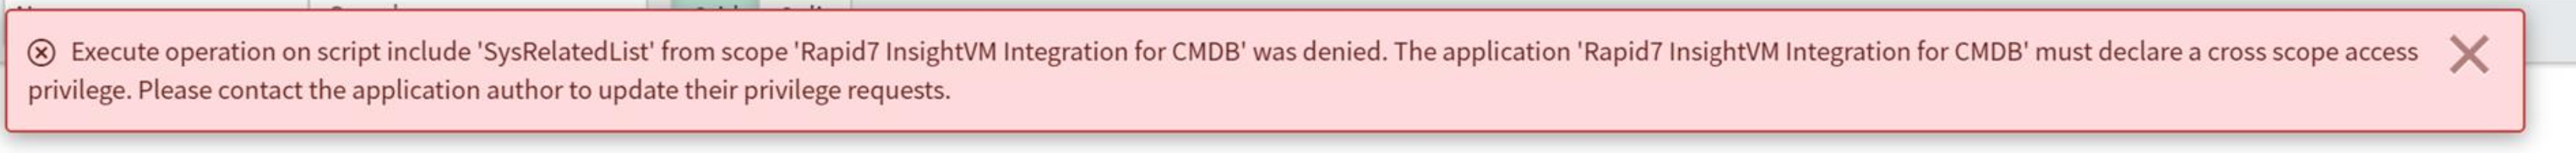 ServiceNow CMDB privilege error